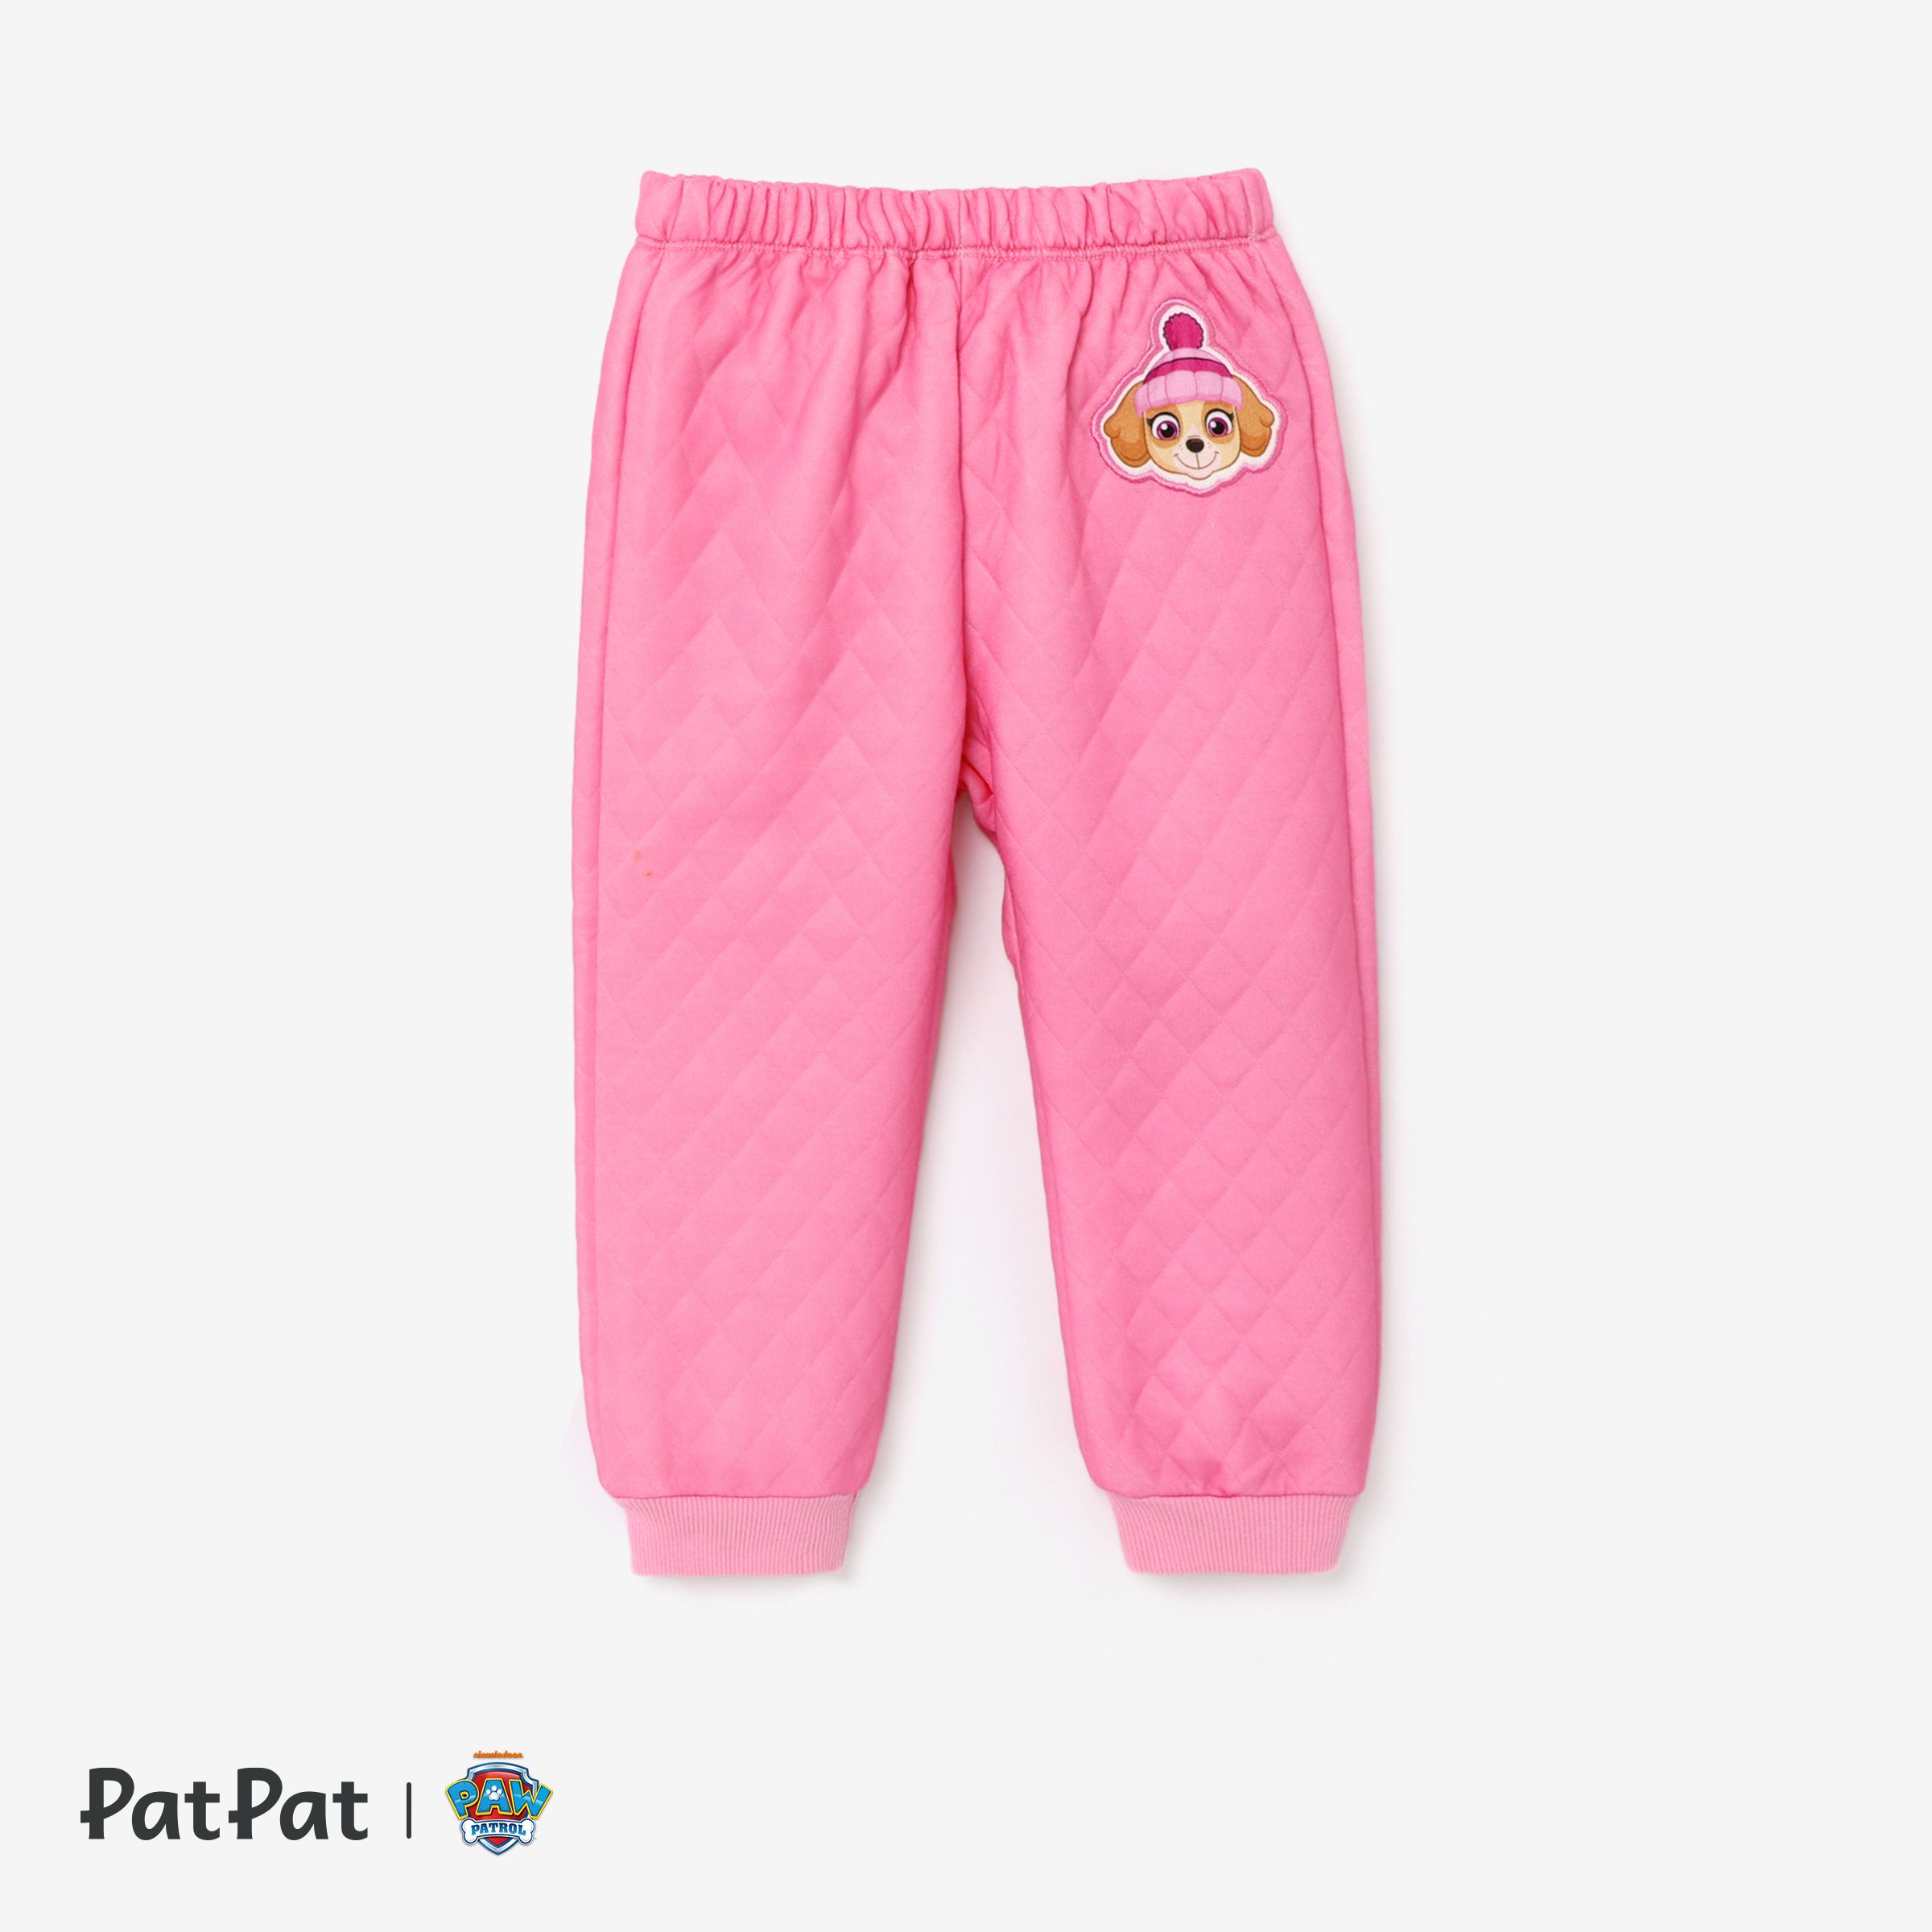 Pat' Patrouille Toddler Girl Personnage Imprimé Sweat-shirt à Manches Longues Ou Pantalon Brodé Personnage